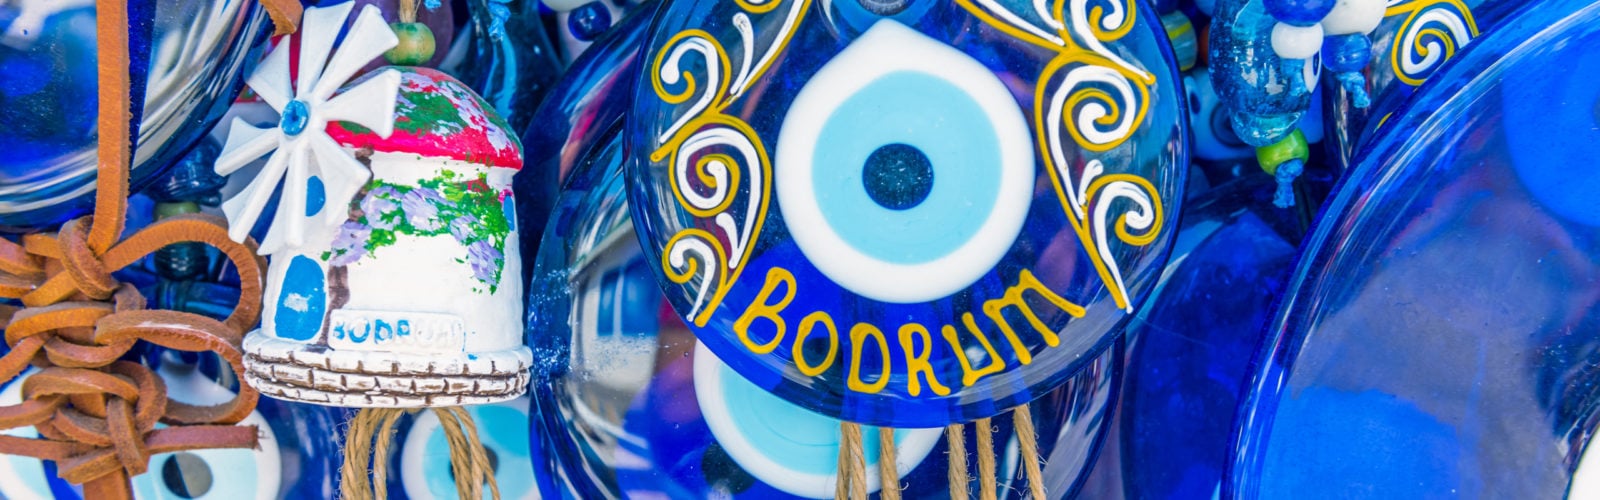 Blue souvenirs in Bodrum